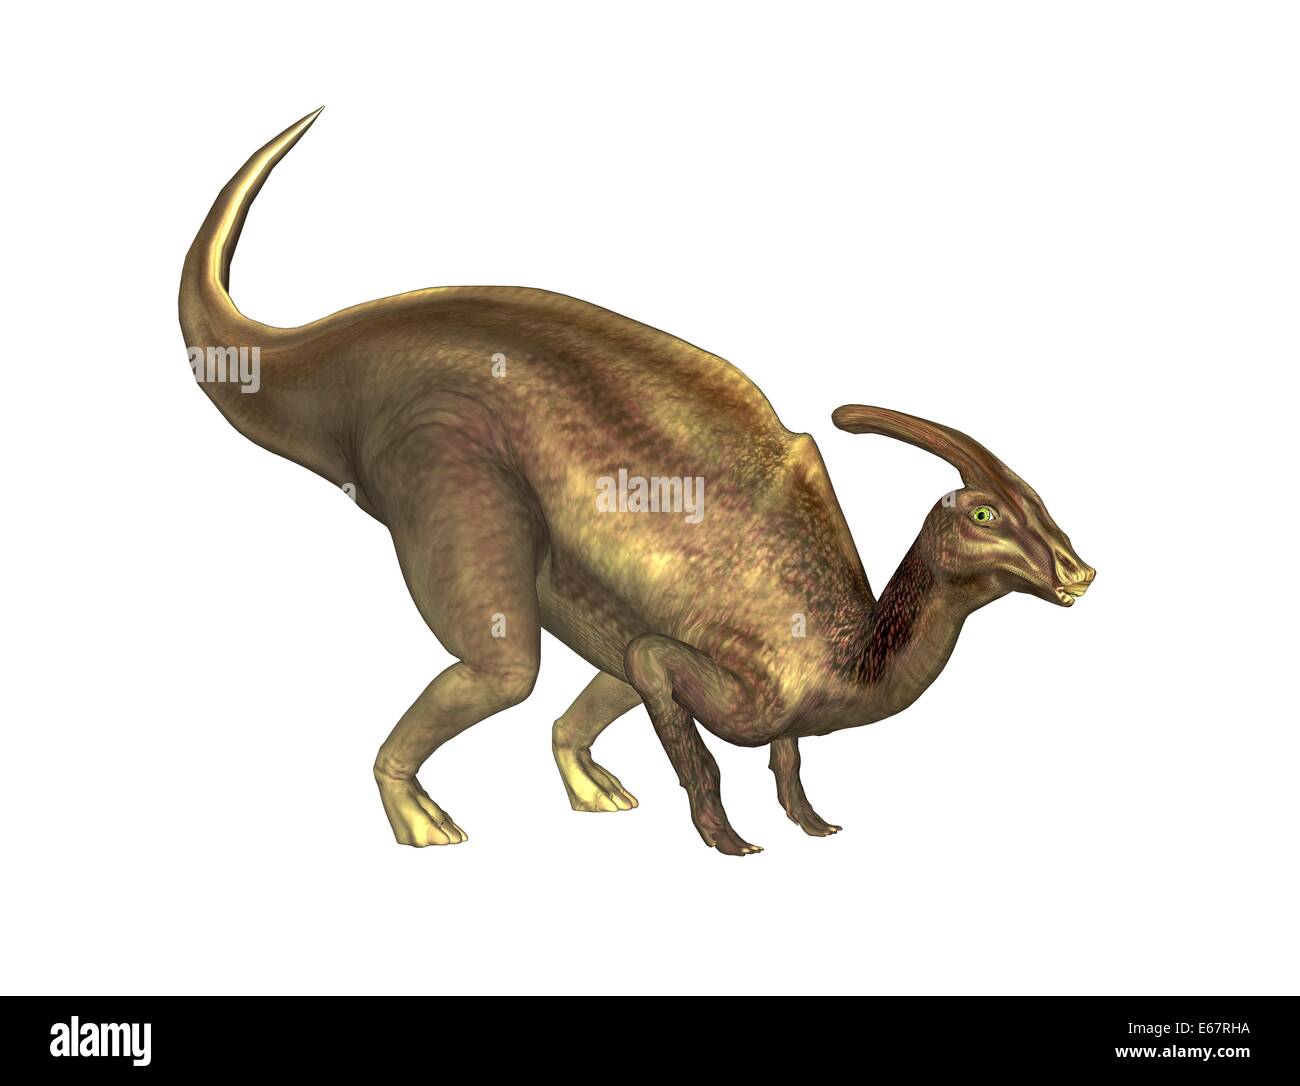 Dinosaurier Parasaurolophus / dinosaur Parasaurolophus Stock Photo - Alamy